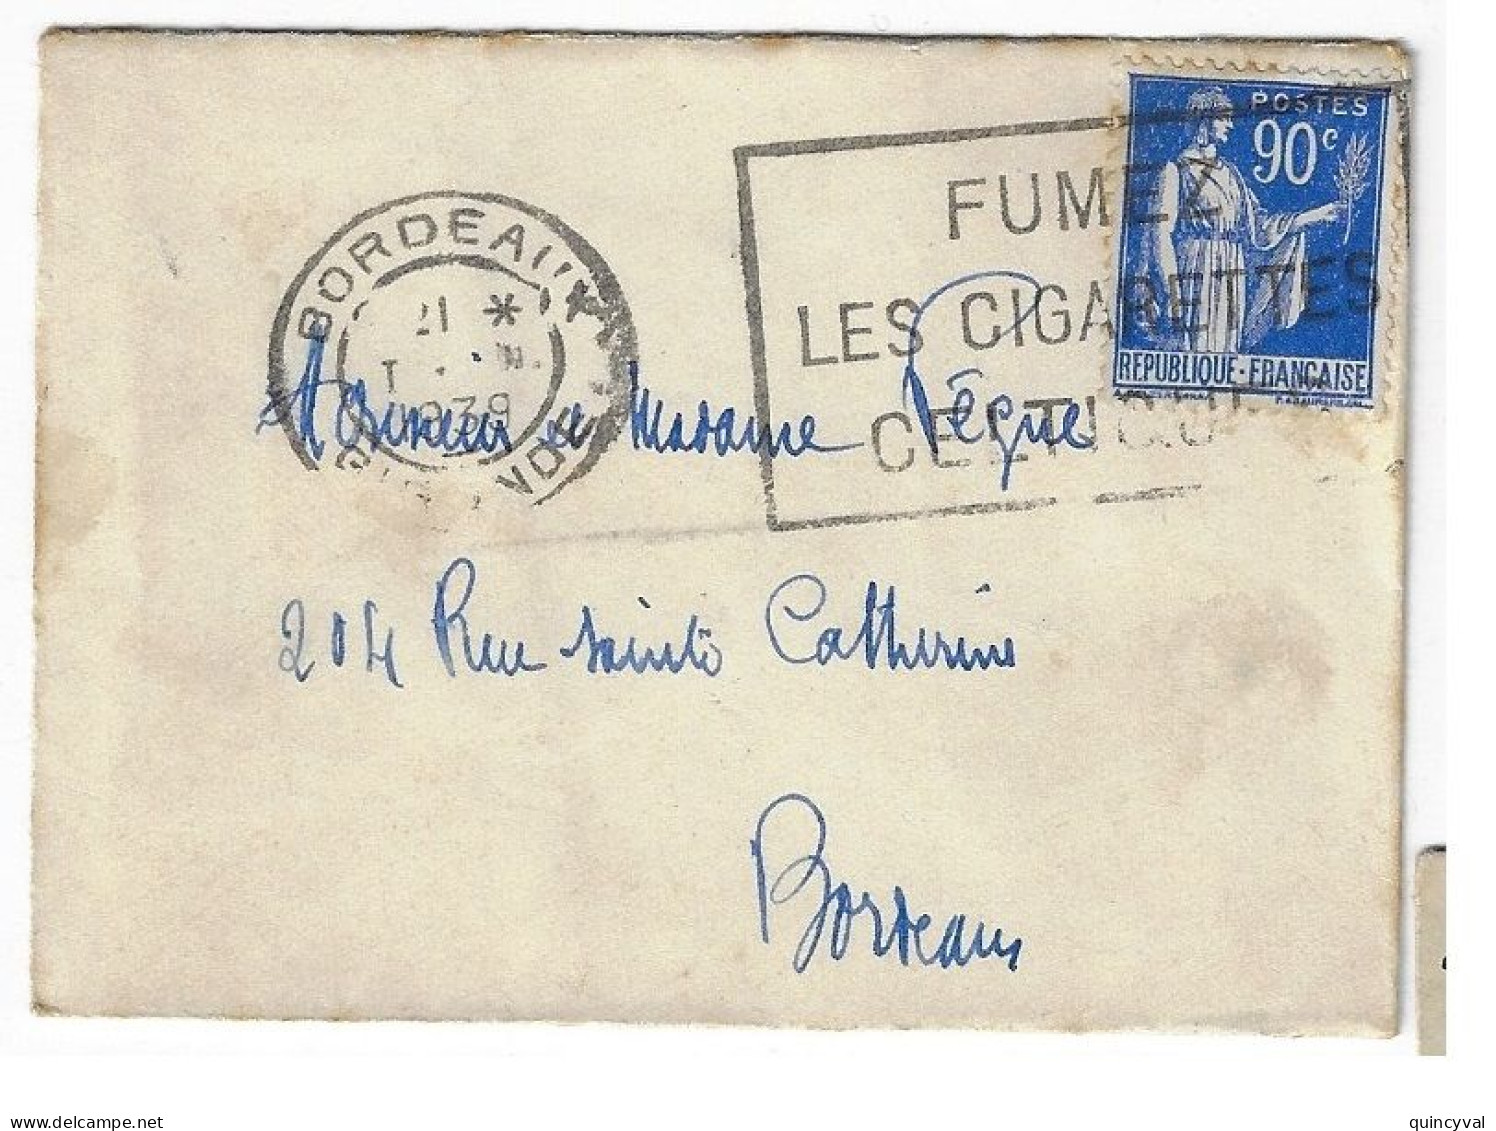 BORDEAUX Enveloppe Carte De Visite Mignonnette 90c Paix Yv 368 Ob Meca 1939 Fumez Cigarettes Celtiques - Cartas & Documentos